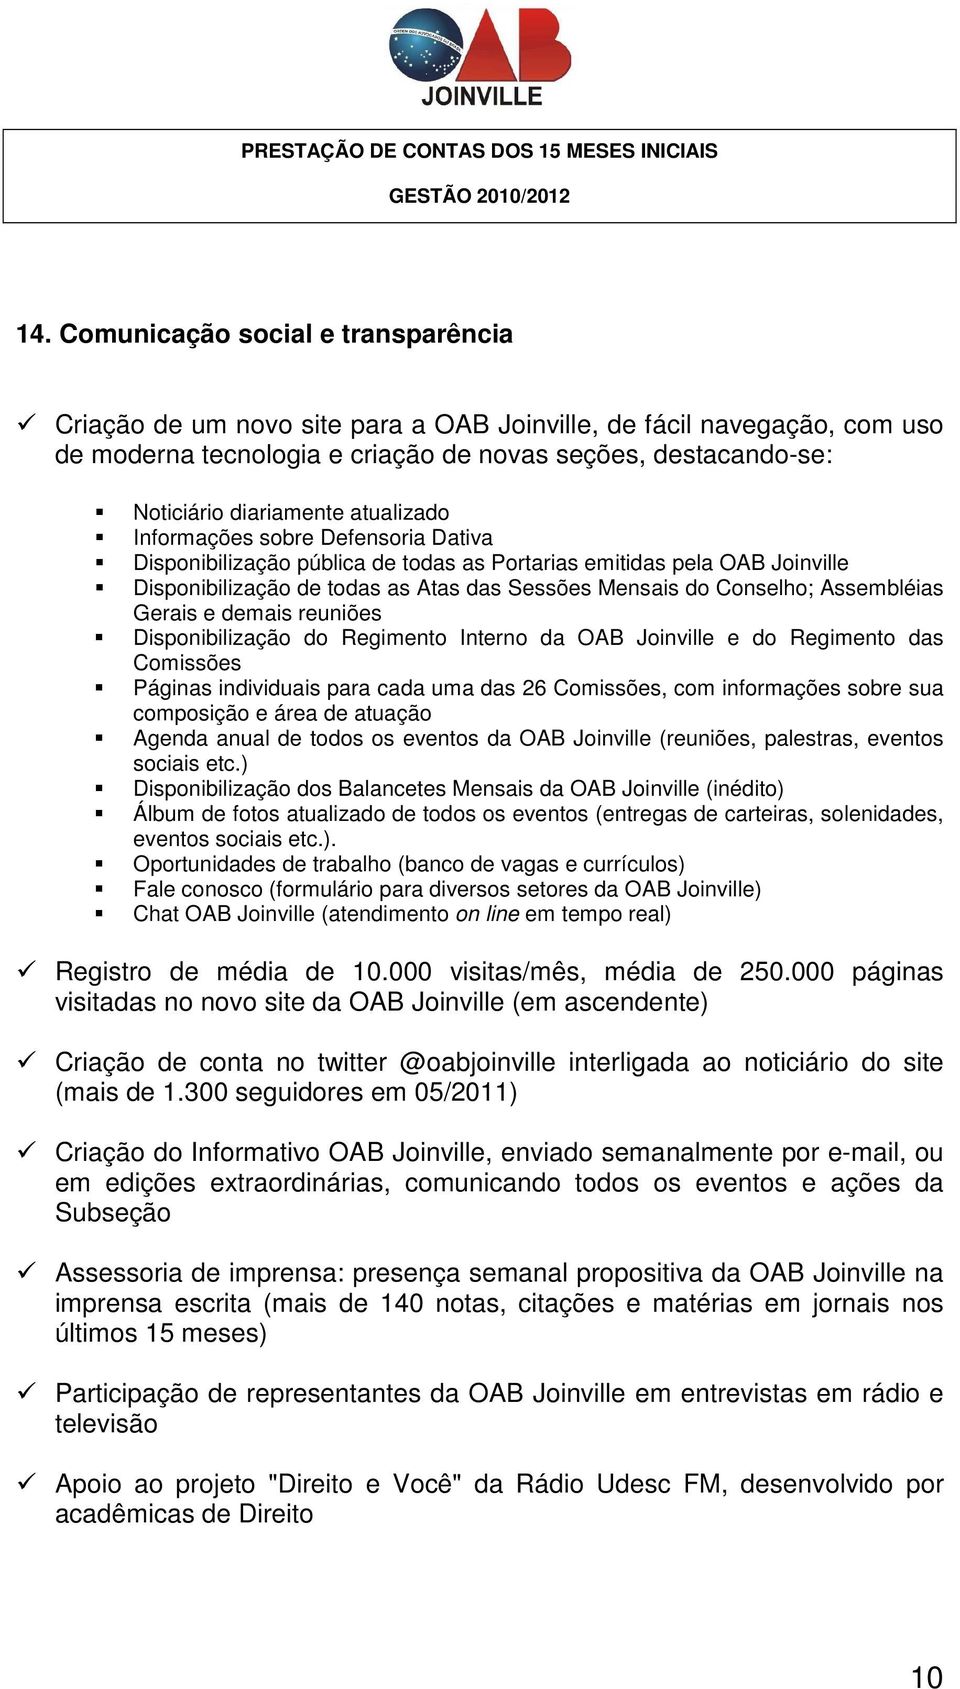 Assembléias Gerais e demais reuniões Disponibilização do Regimento Interno da OAB Joinville e do Regimento das Comissões Páginas individuais para cada uma das 26 Comissões, com informações sobre sua